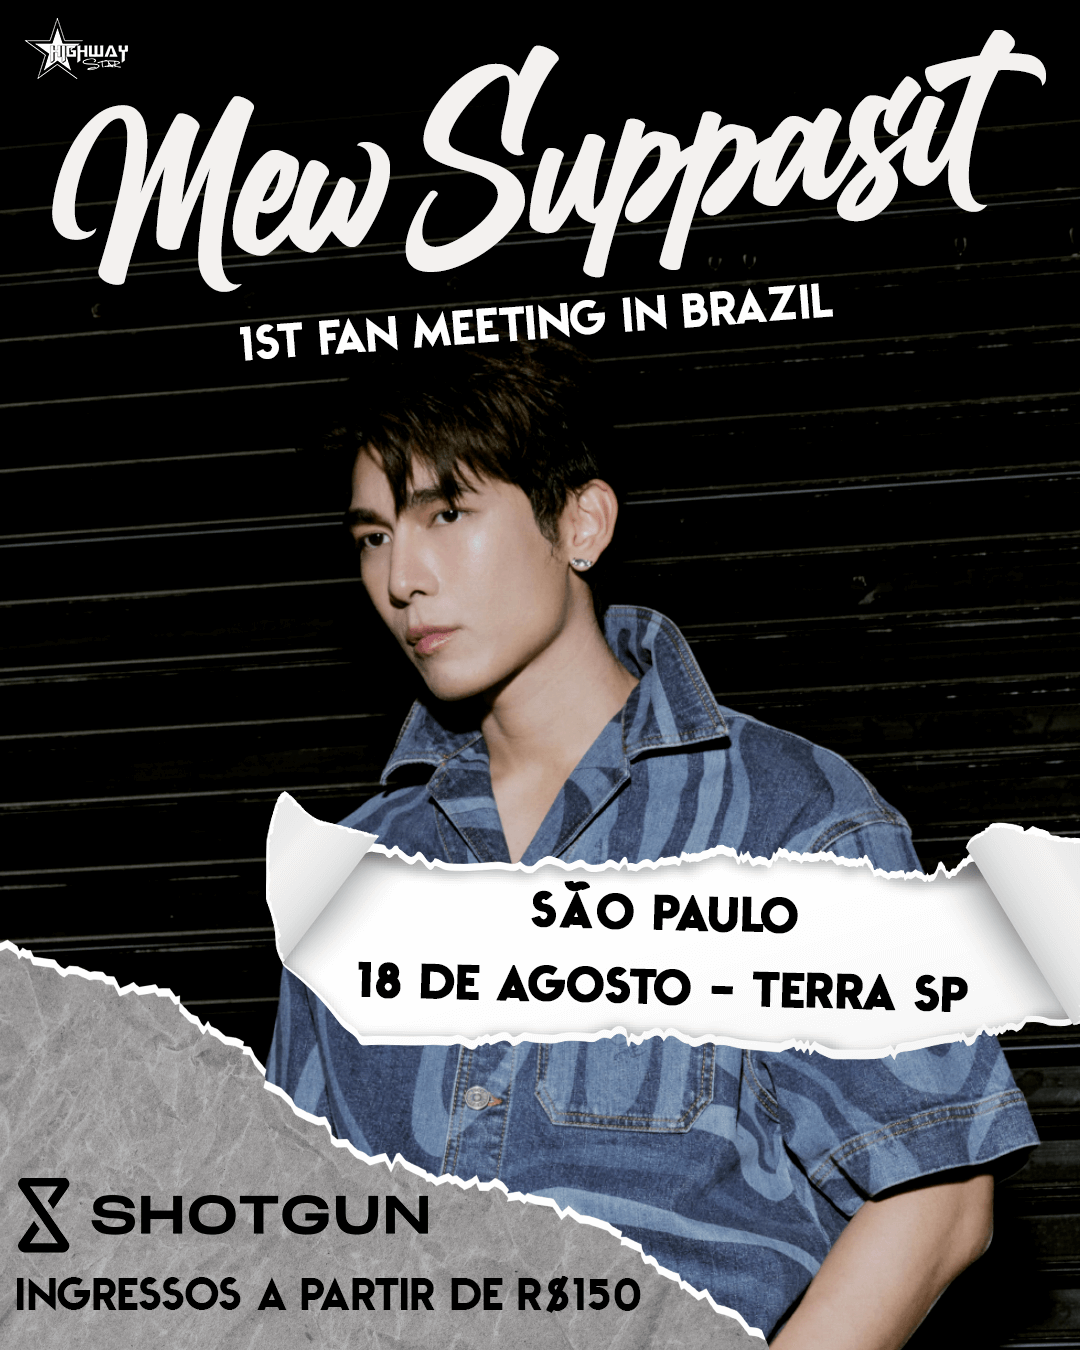 O conhecido ator tailandês de séries Boys Love, Mew Suppasit, fará sua primeira visita ao Brasil em um evento imperdível em São Paulo.